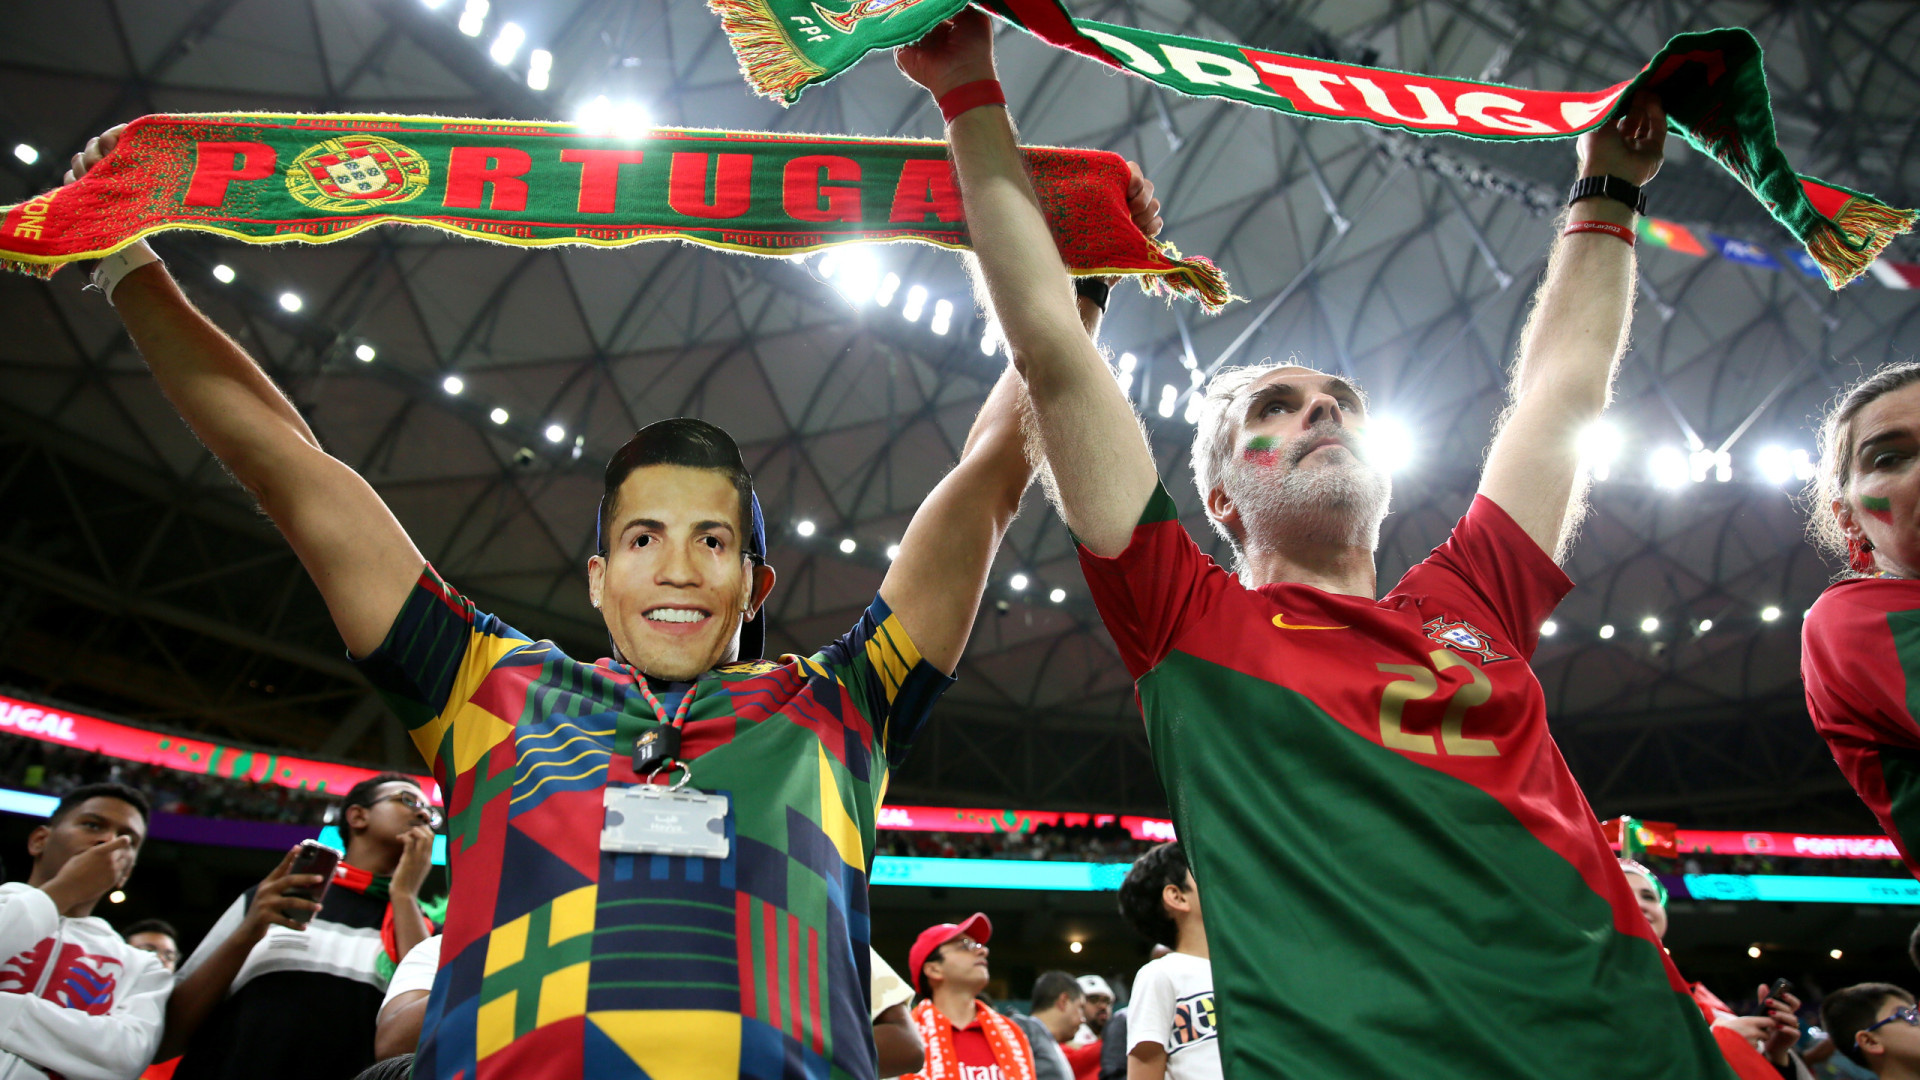 Imagens do 17.º dia da Copa: A festa portuguesa e a desilusão espanhola